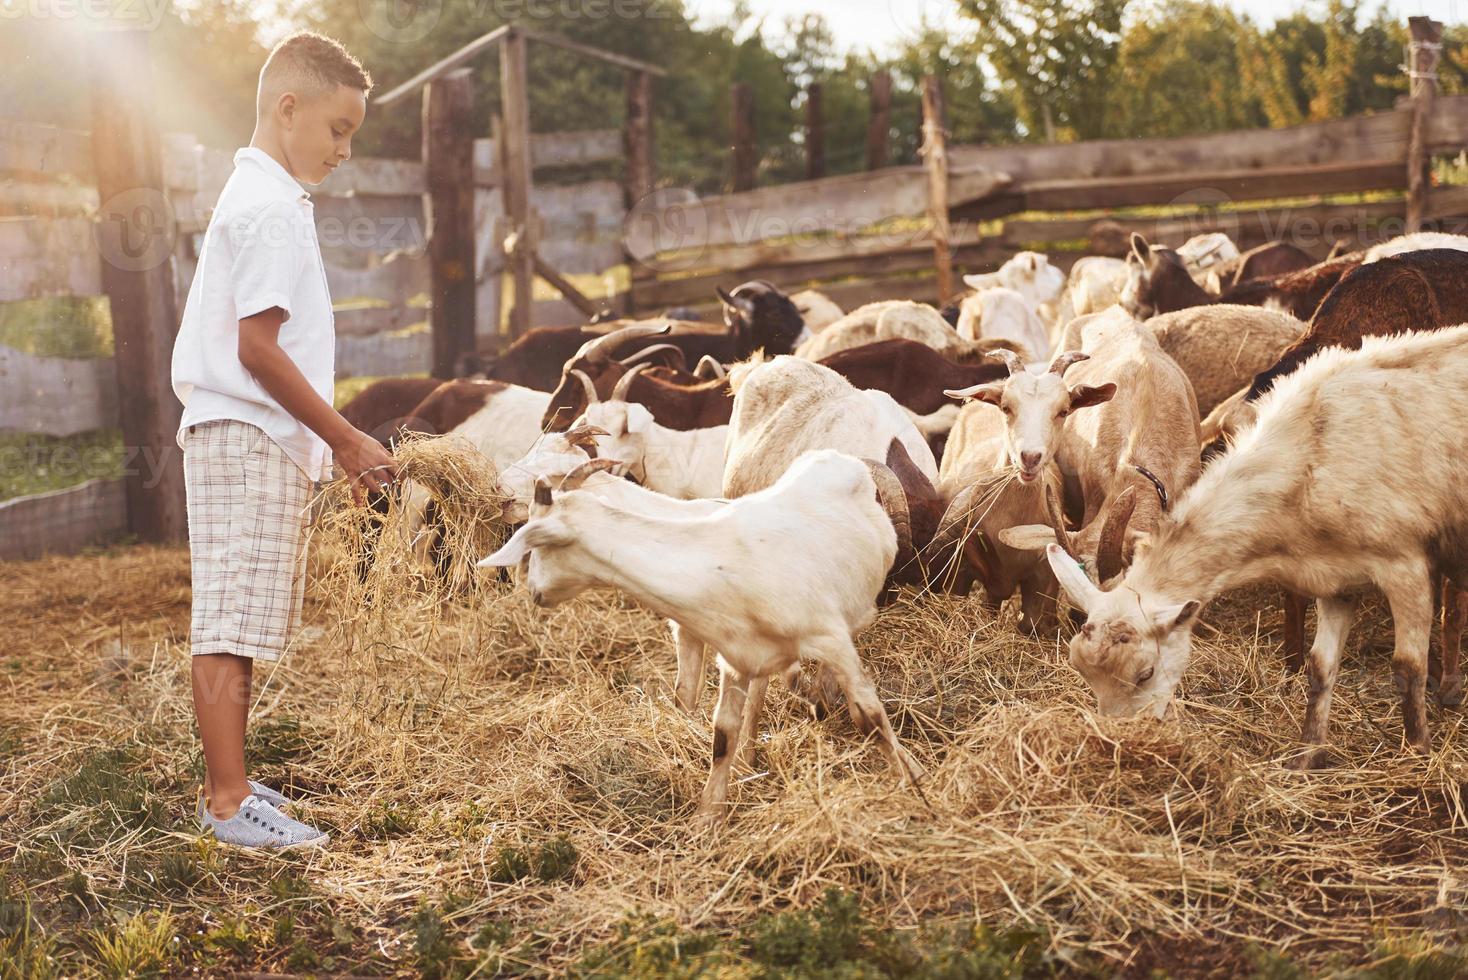 menino afro-americano bonitinho está na fazenda no verão com cabras foto